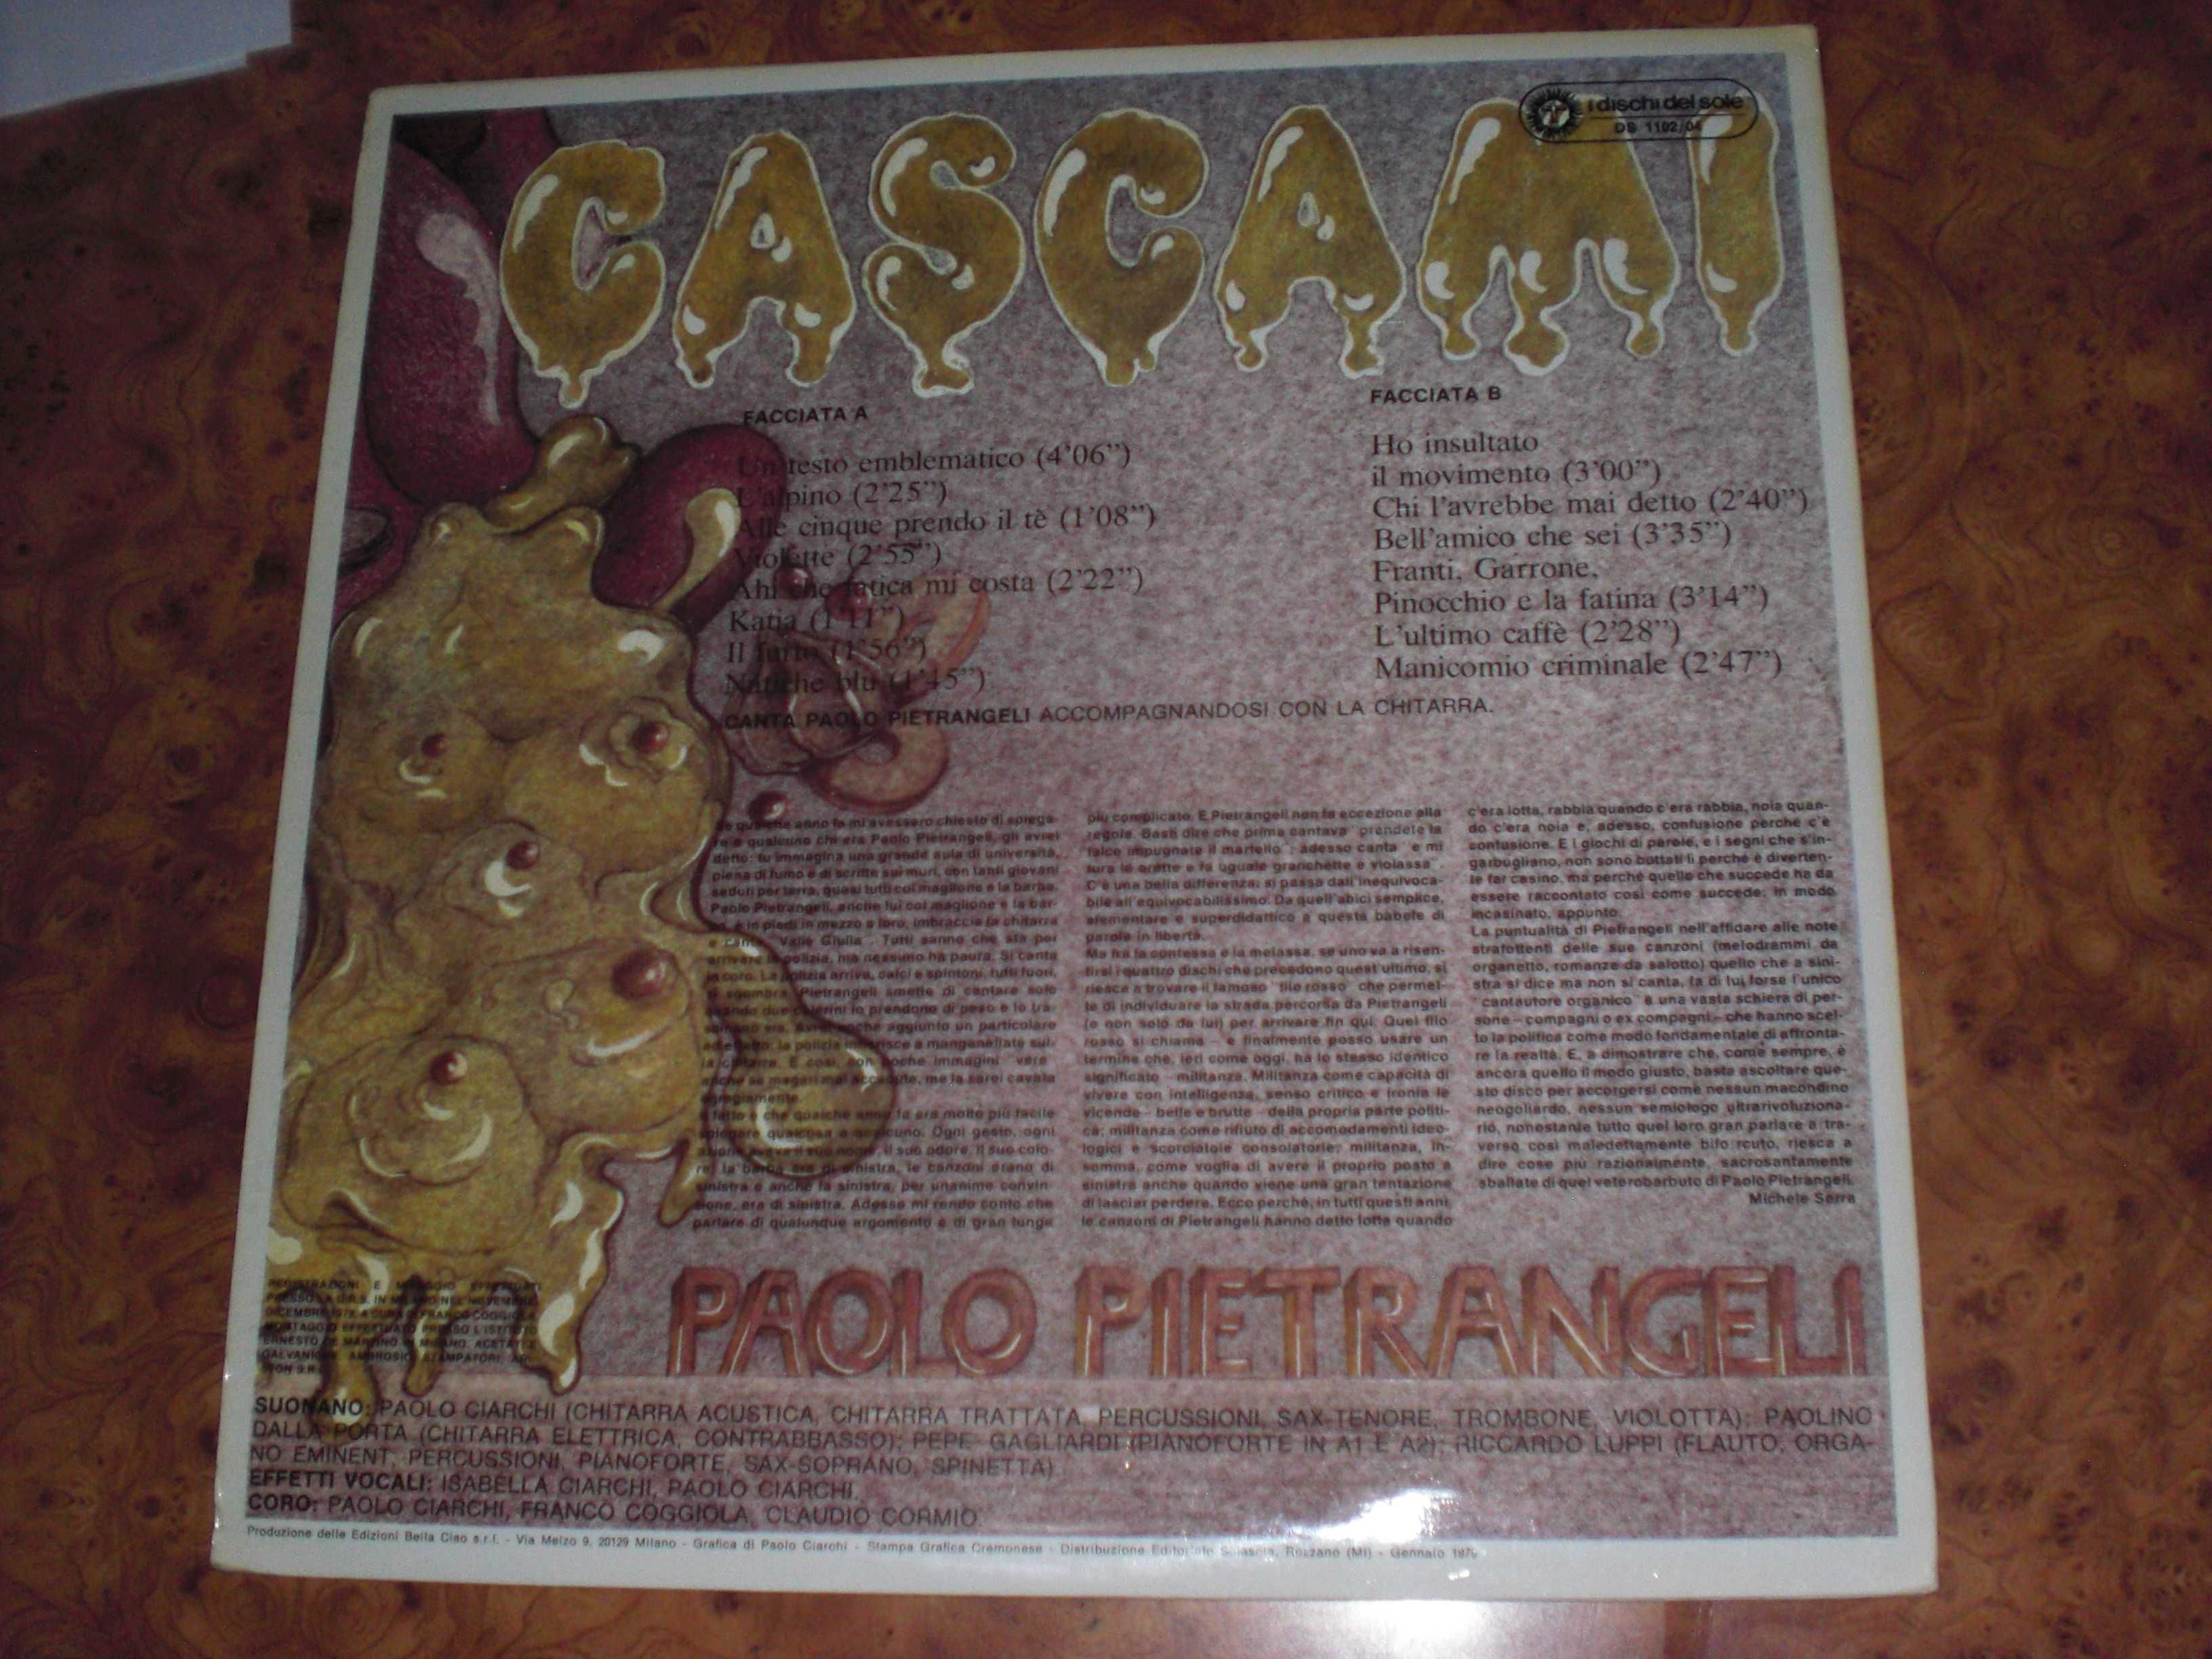 Paolo Pietrangeli - Cascami .LP